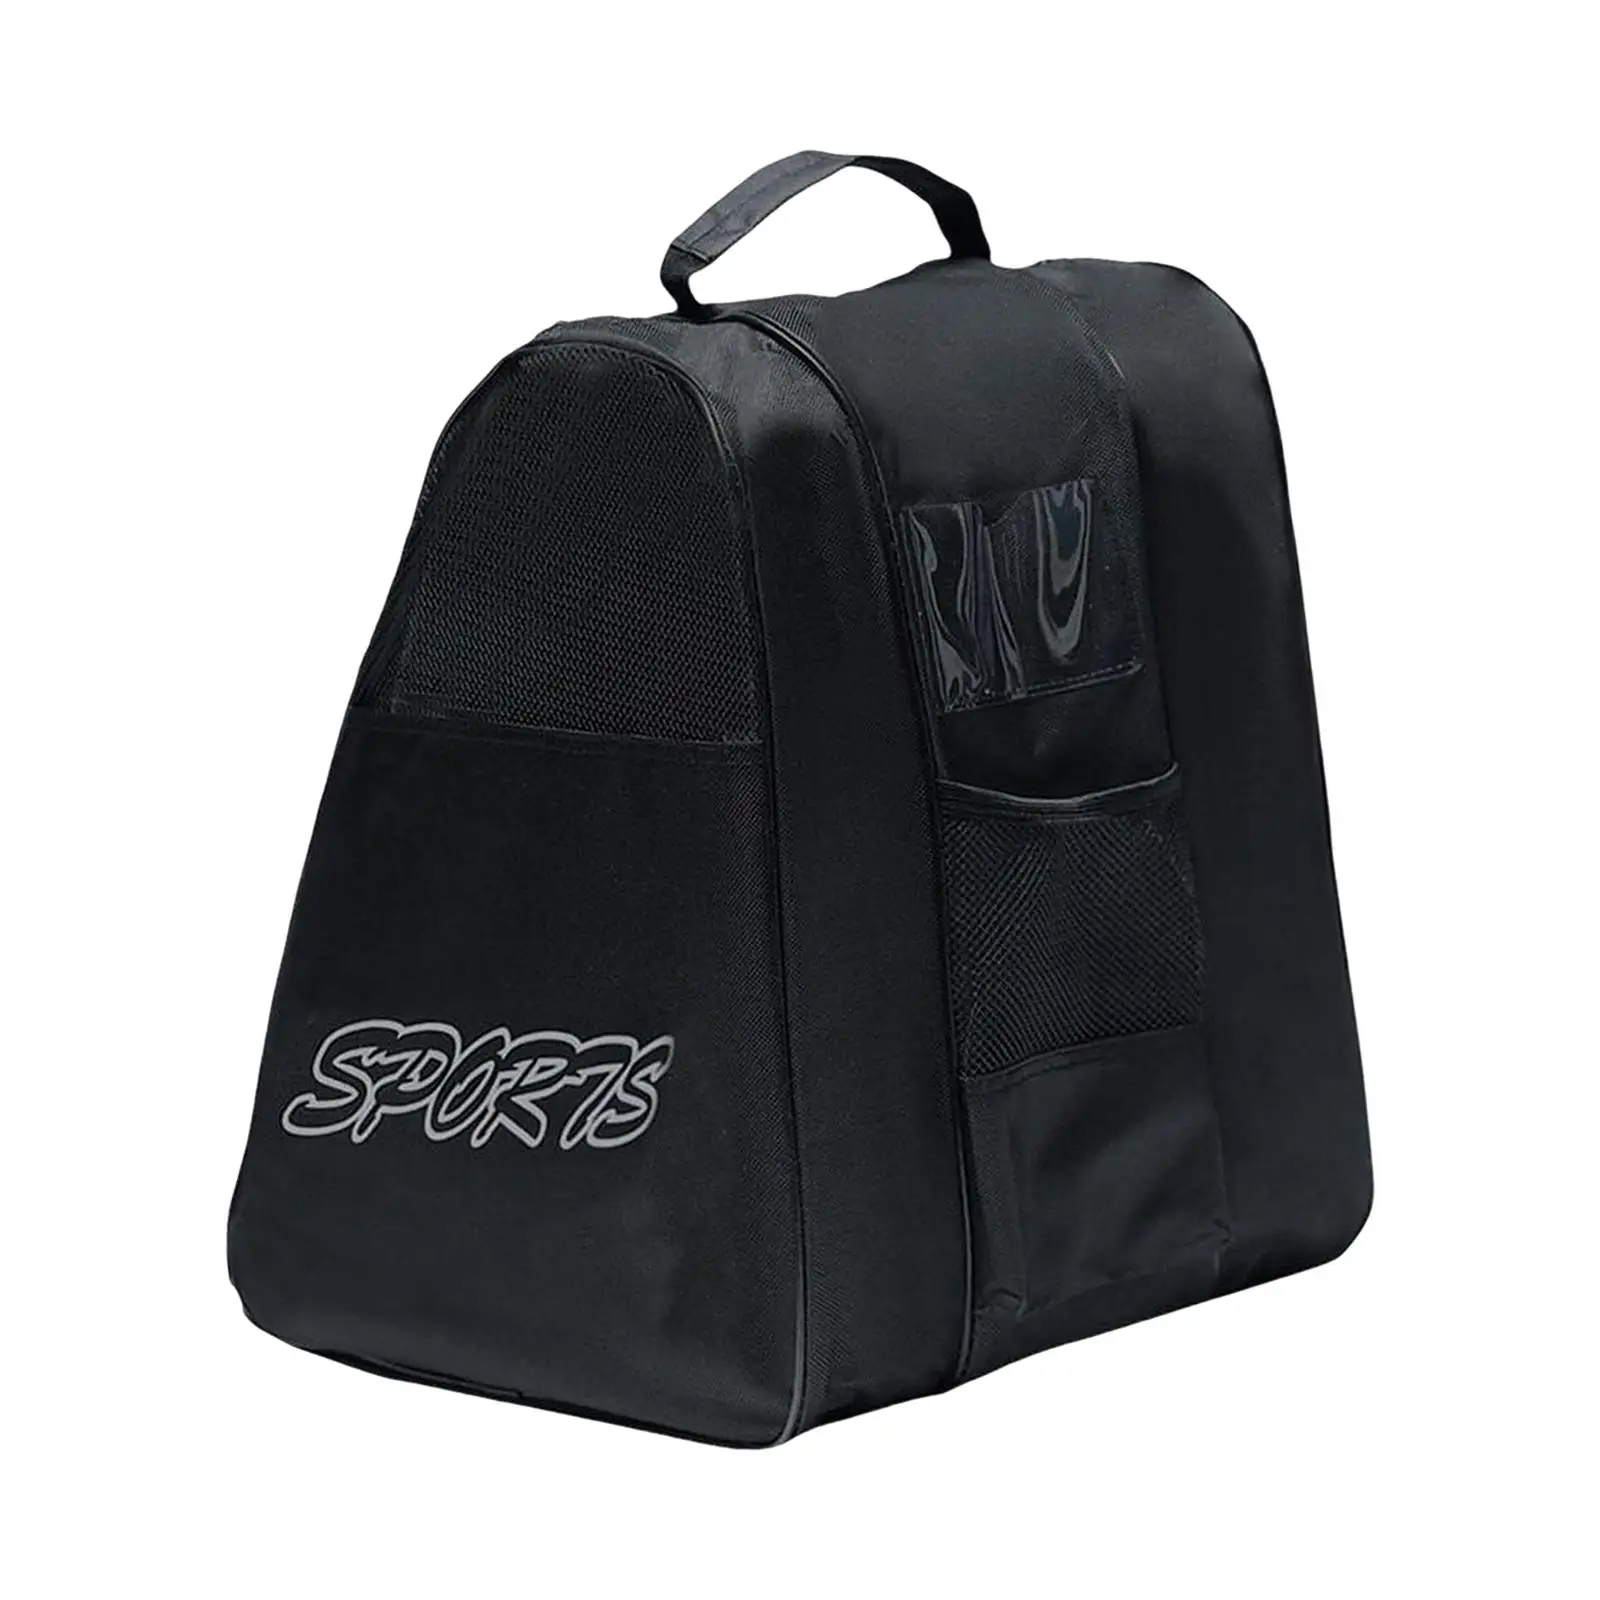 Roller Skate Bags Adjustable Shoulder Strap Lightweight Skate Carry Bag Handbag for Figure Skates Ice Hockey Skate Inline Skates